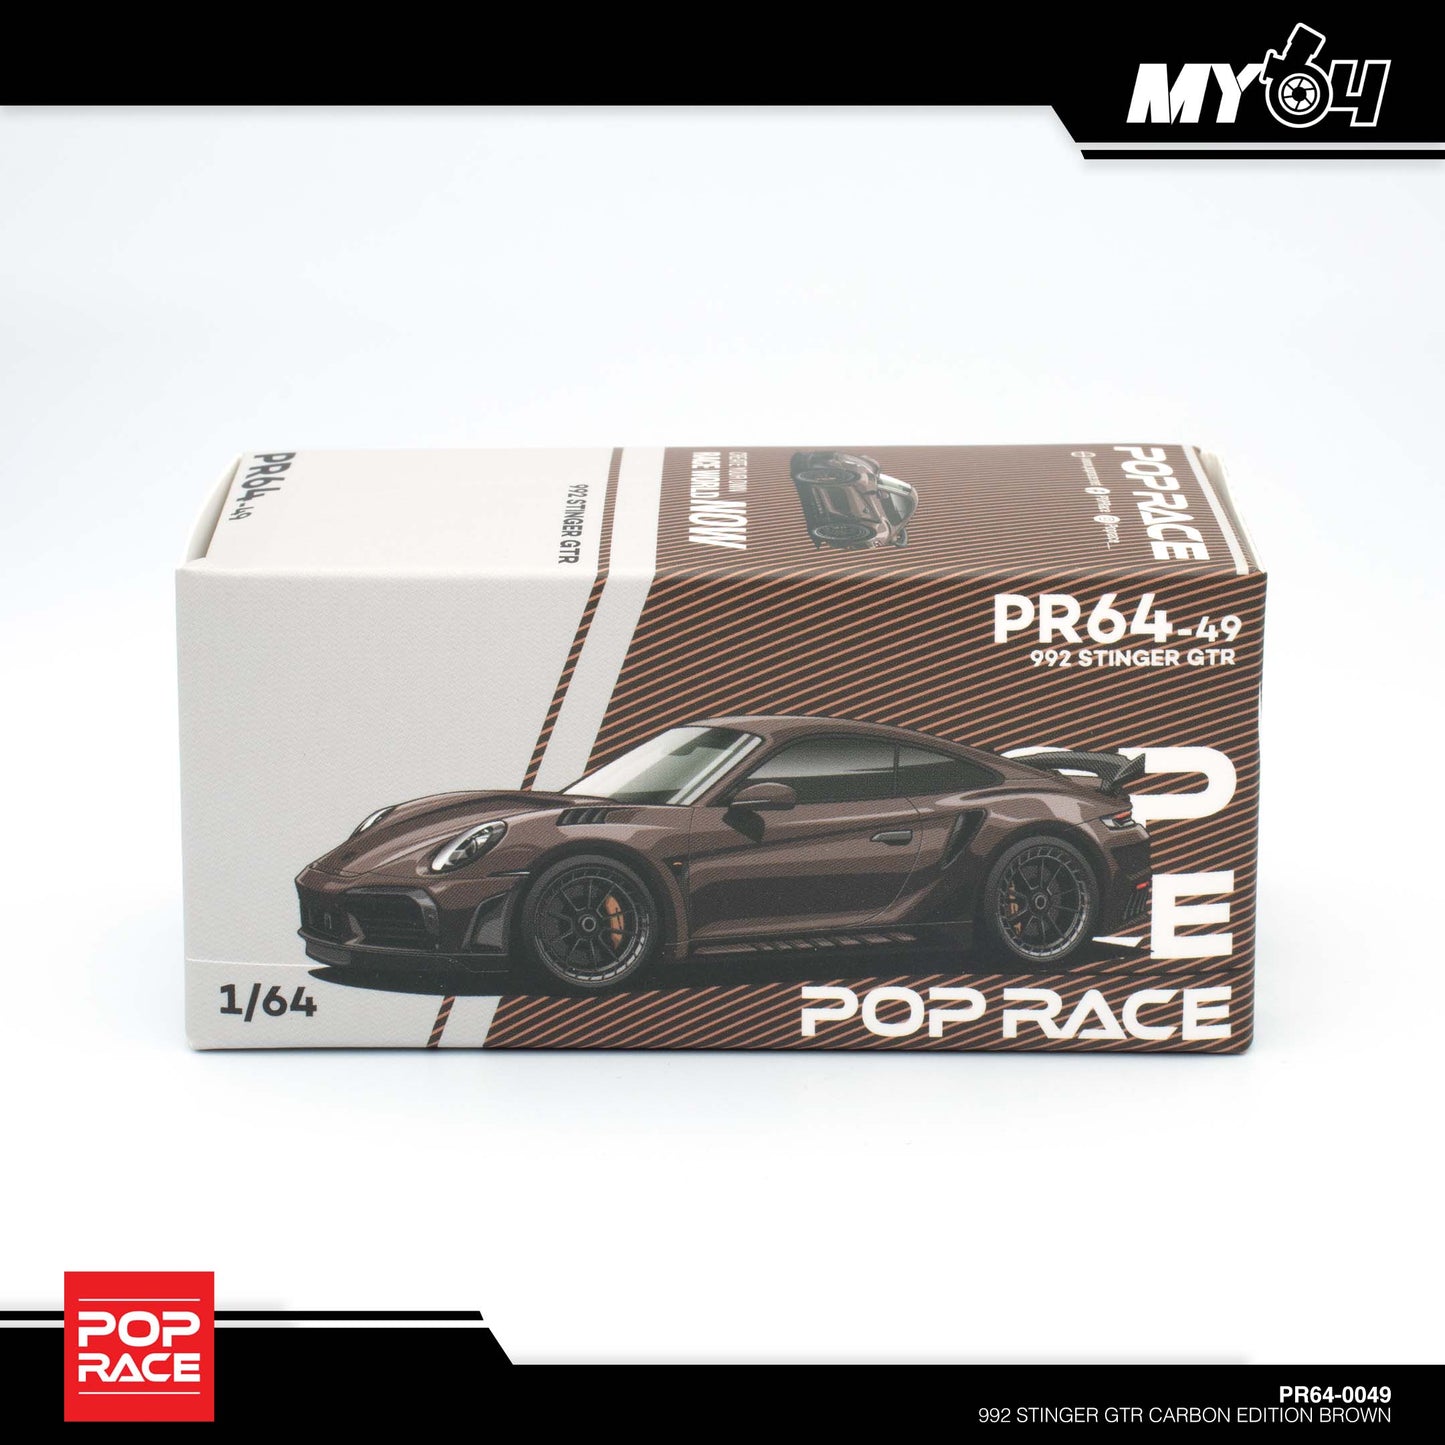 [Pop Race] 992 Stinger GTR Carbon Edition - Brown